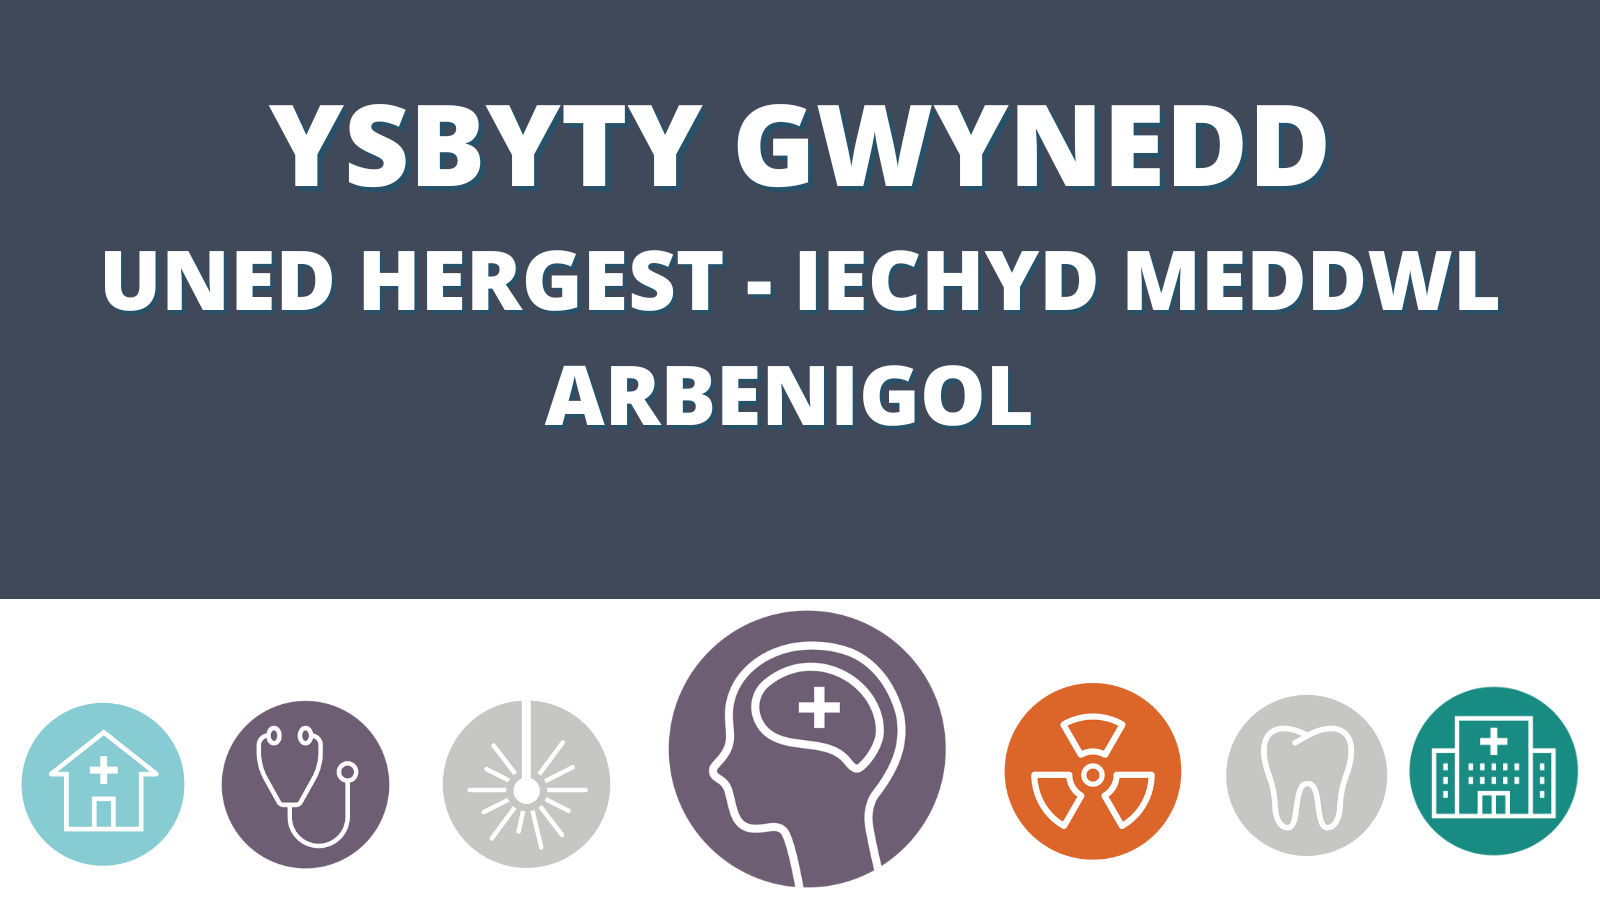 Ysbyty Gwynedd Uned Hergest - Iechyd Meddwl Arbenigol